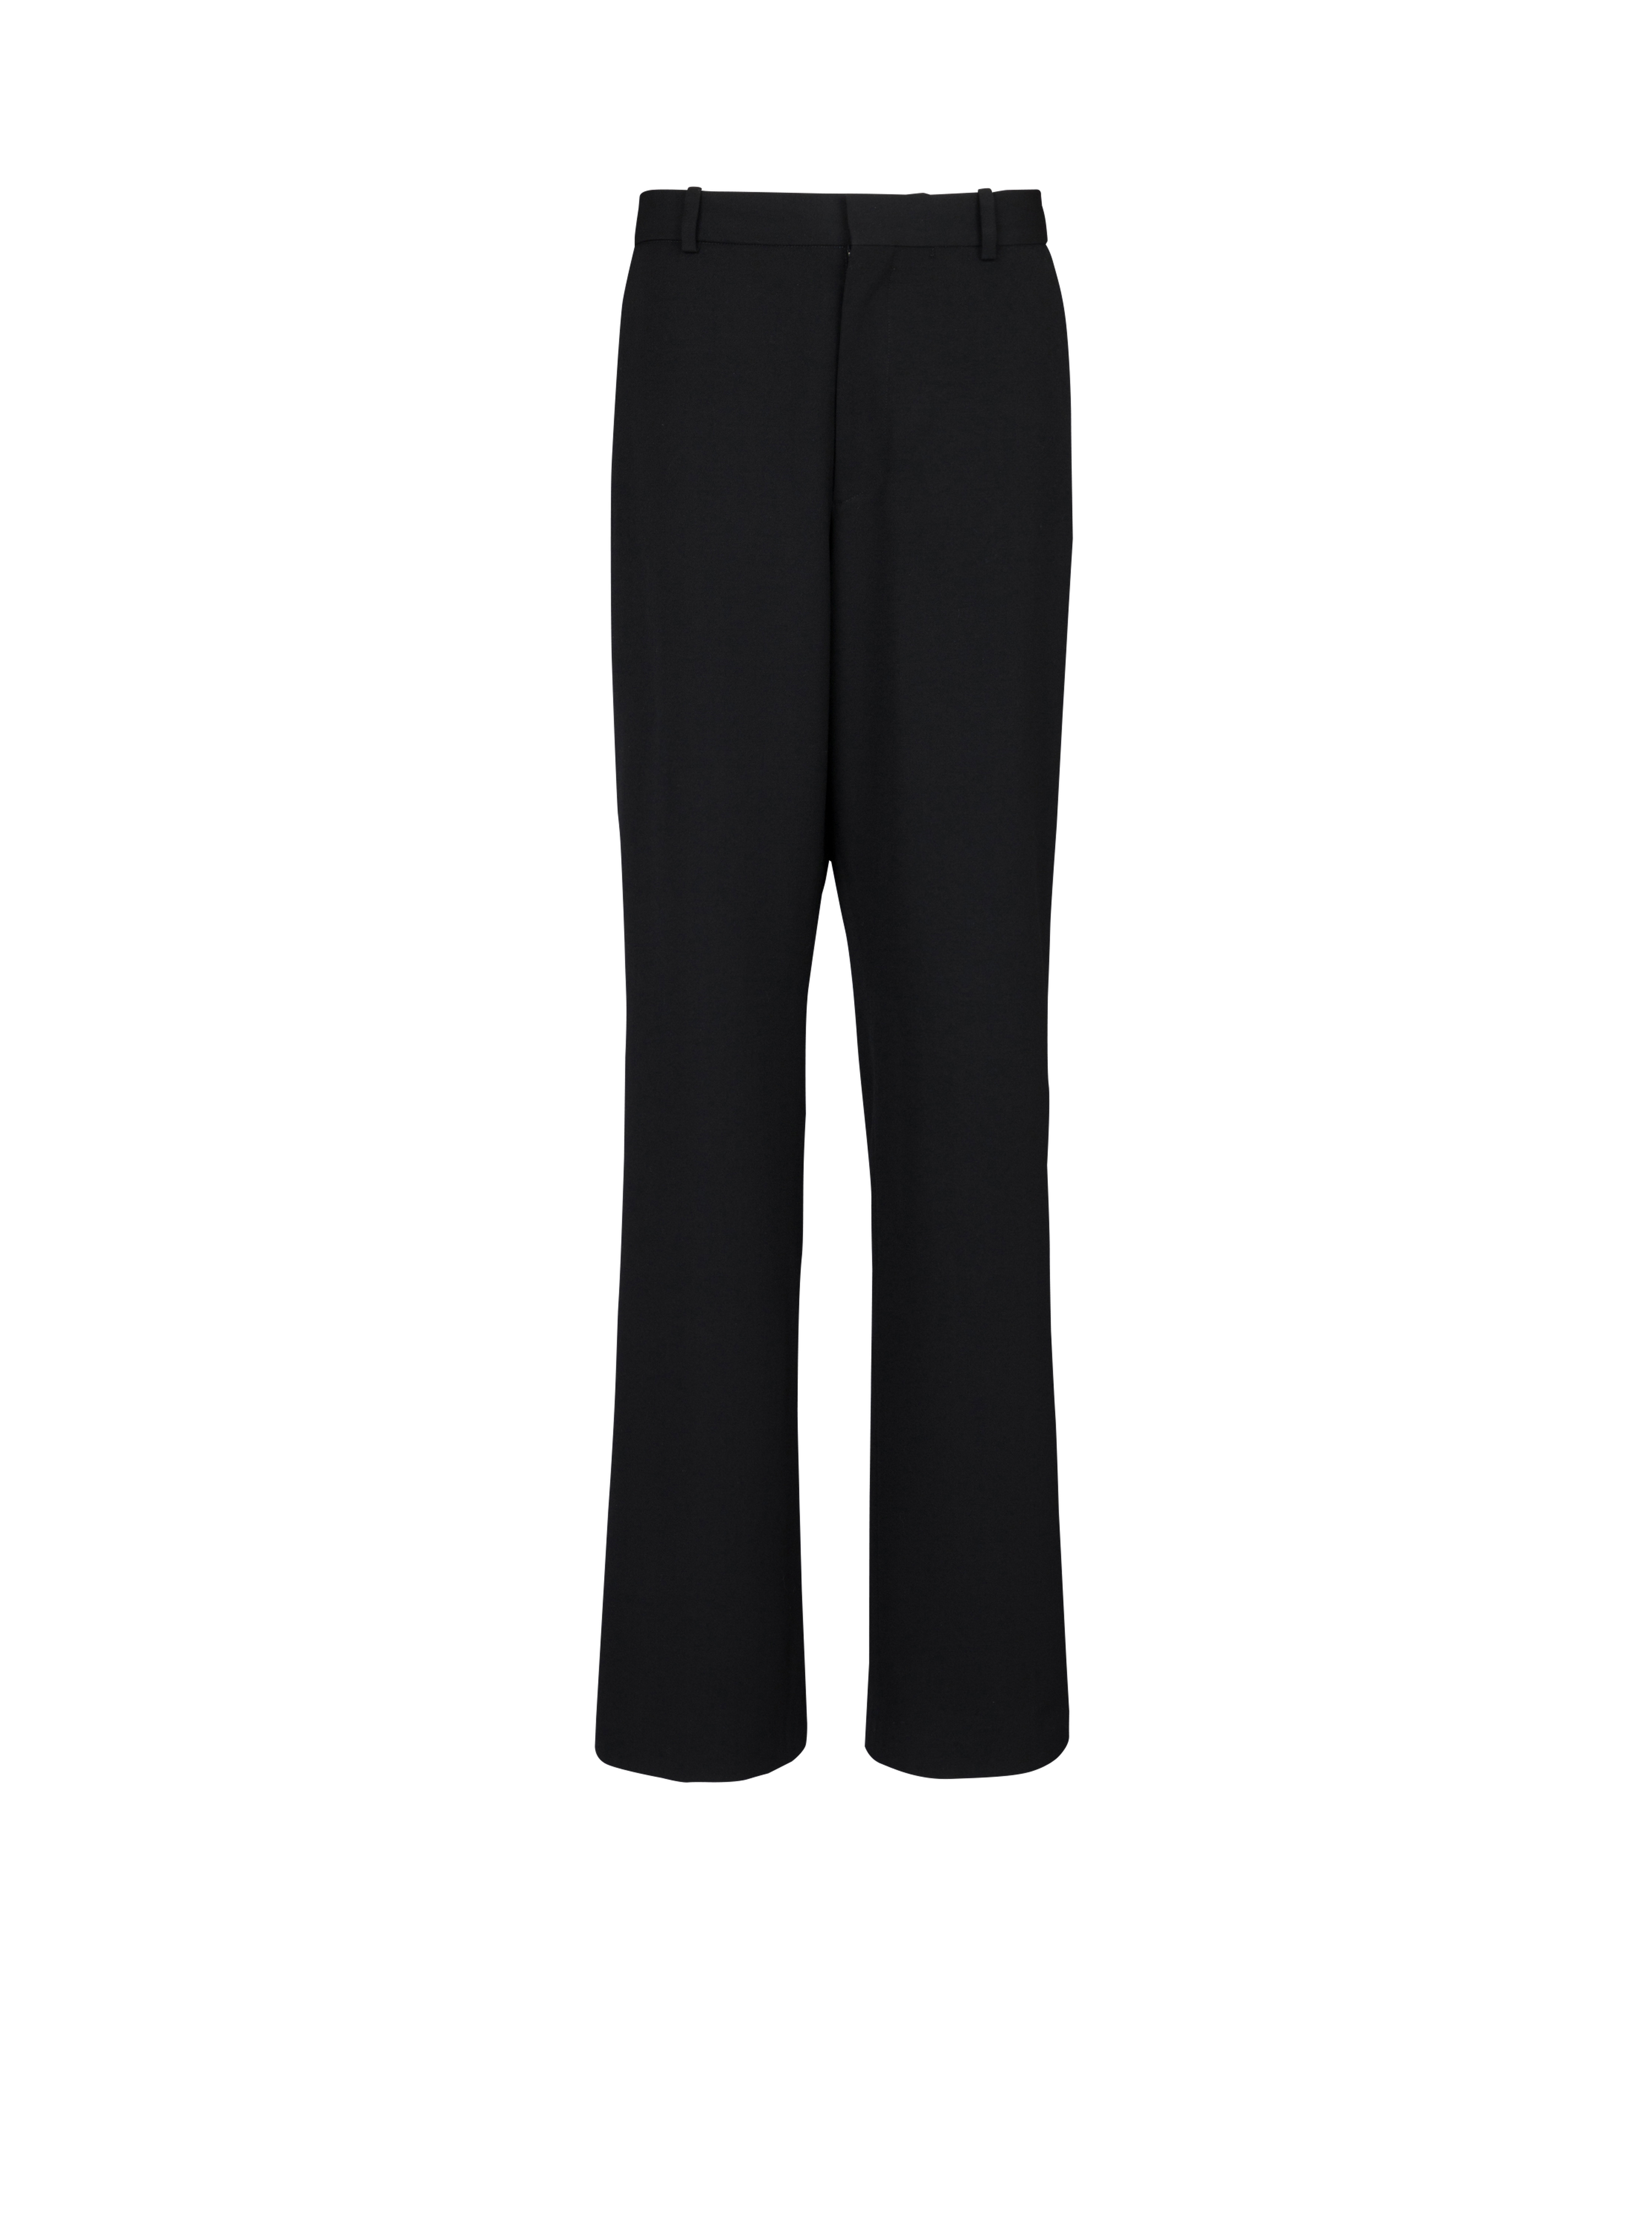 Wool wide-leg trousers, black